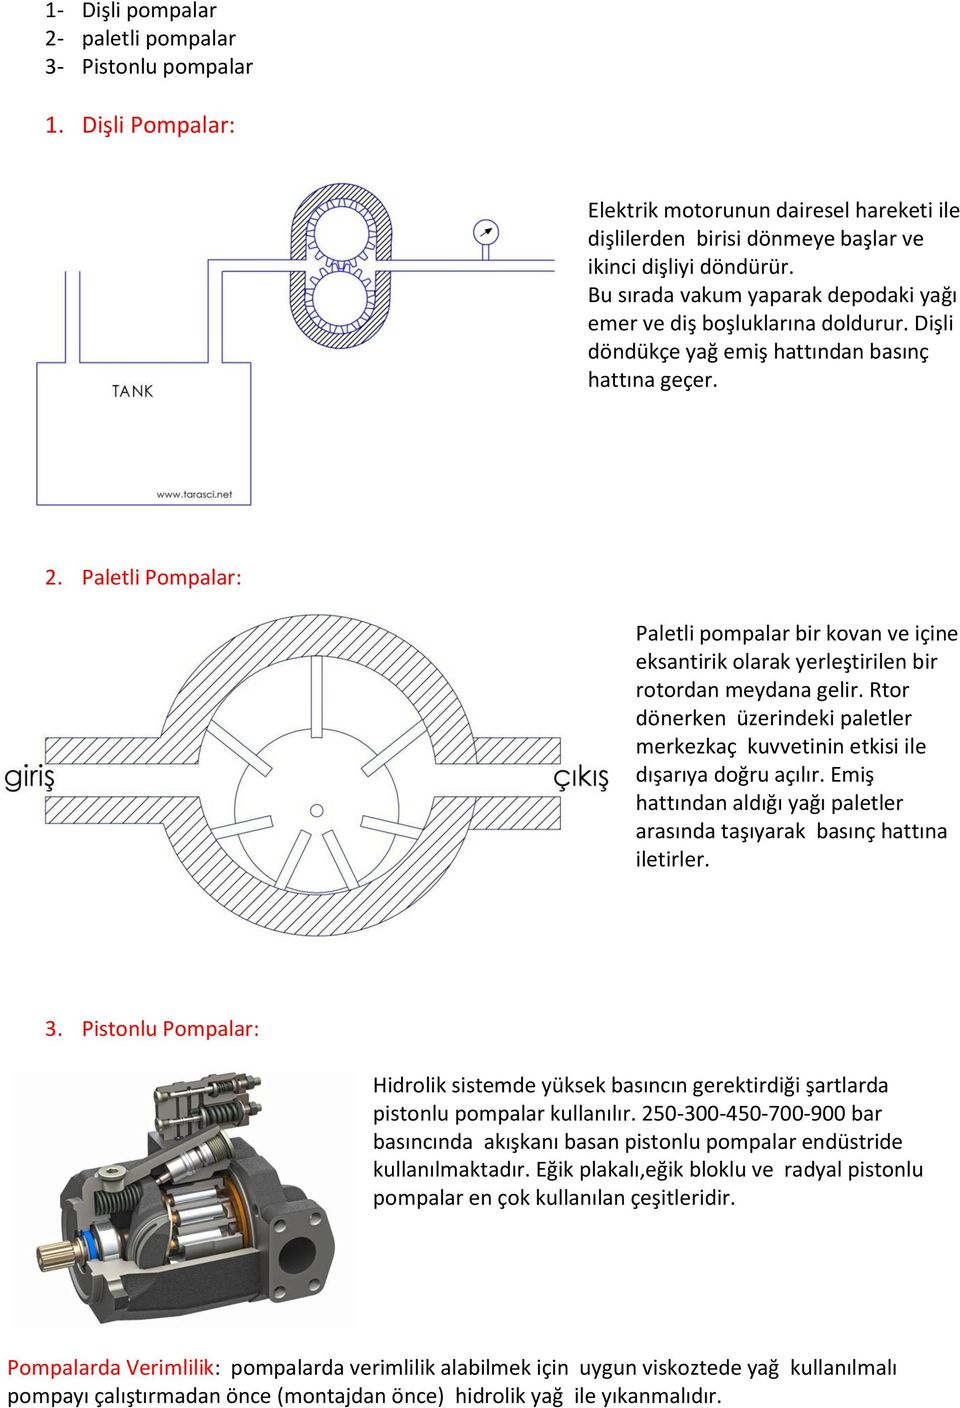 Paletli Pompalar: Paletli pompalar bir kovan ve içine eksantirik olarak yerleştirilen bir rotordan meydana gelir.